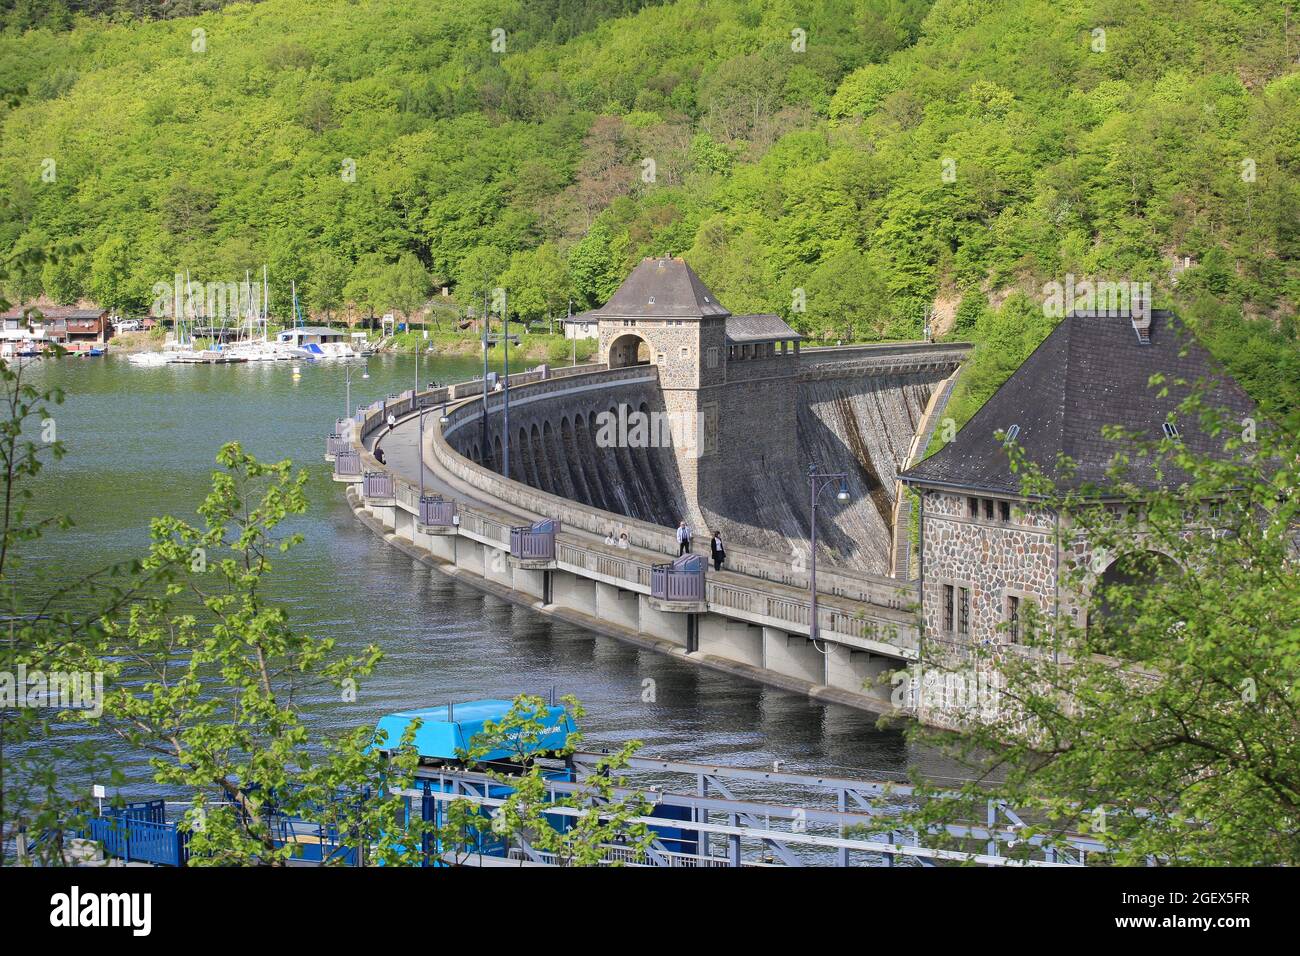 Le barrage d'Eder - un barrage allemand. La rivière Eder est damée jusqu'à former un réservoir. Le lac Eder sert d'approvisionnement en eau pour la rivière Weser, ... Banque D'Images